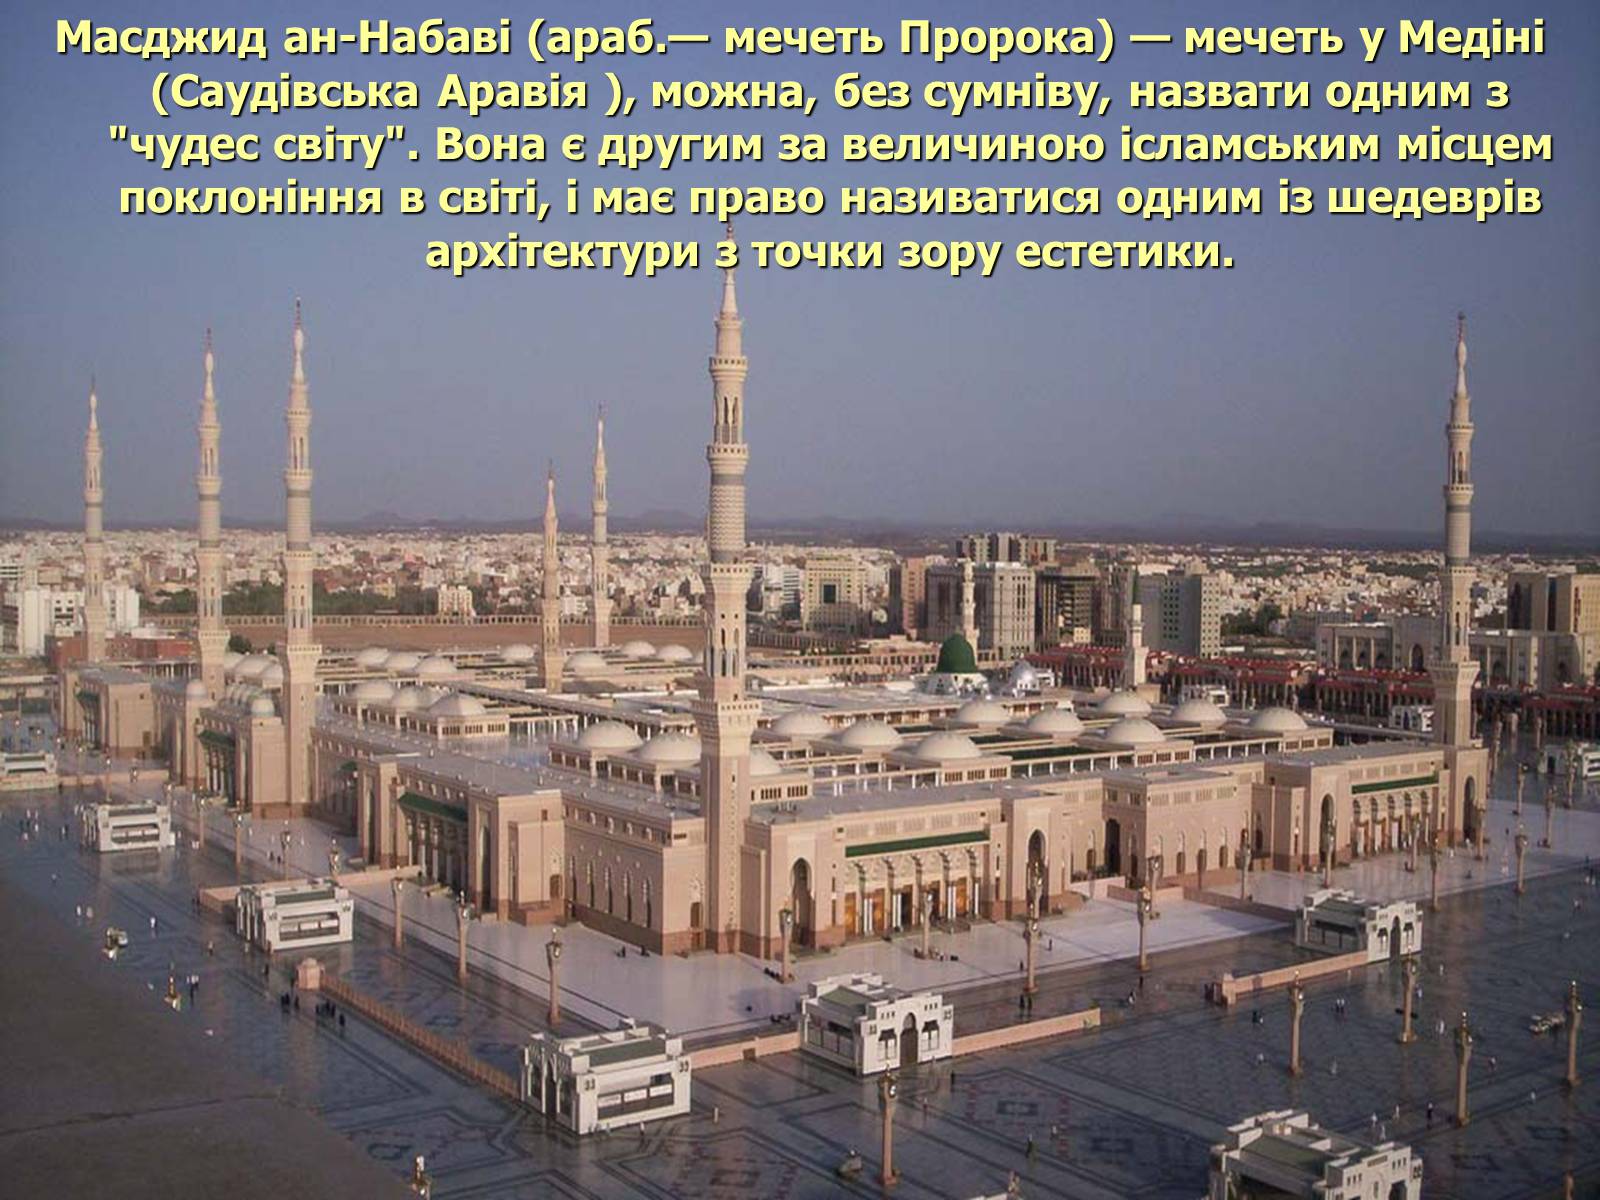 Медина что это. Масджид АН-Набави Медина Саудовская Аравия. Медина мечеть пророка. Аль-Масджид АН-Набави - мечеть пророка. Мечеть Масджид АН-Набави (мечеть пророка), Медина.